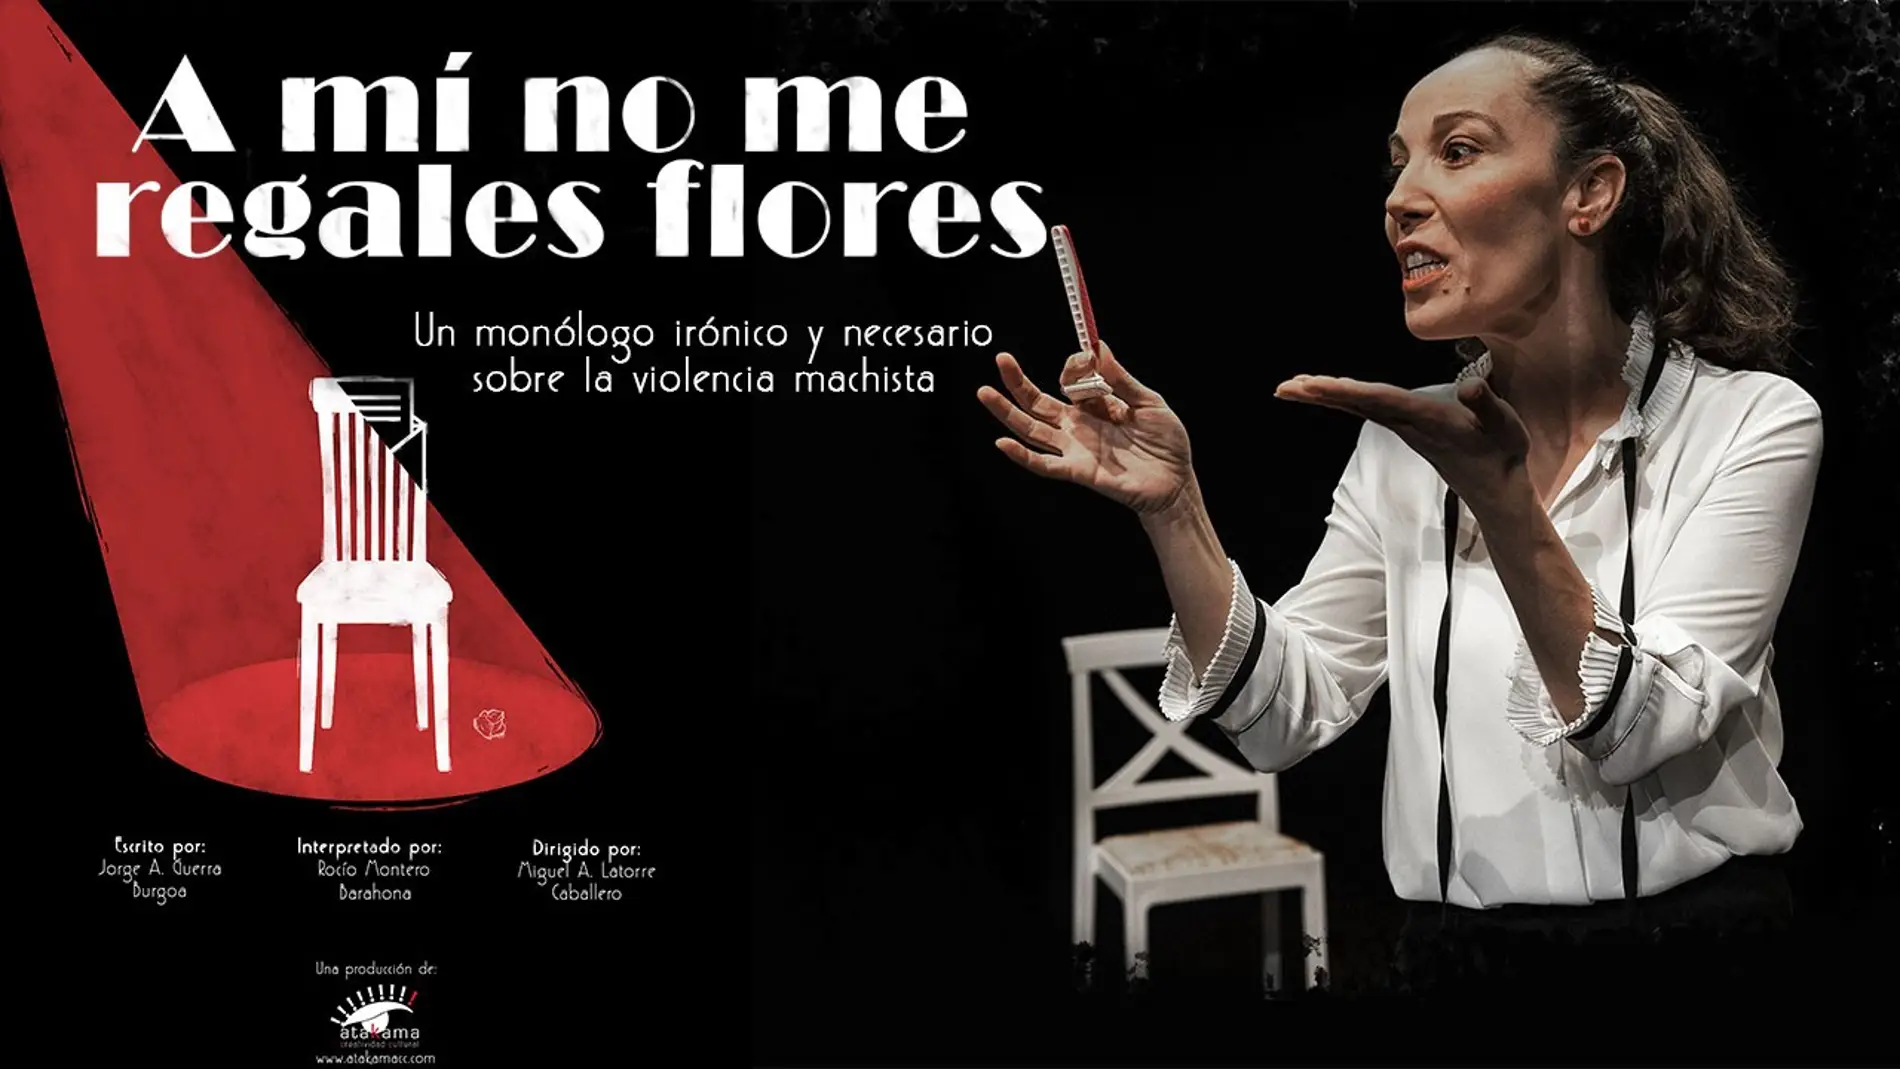 El monólogo “A mí no me regales flores” sobre la visibilización de la violencia machista estará en el Gran Teatro de Cáceres el 8M